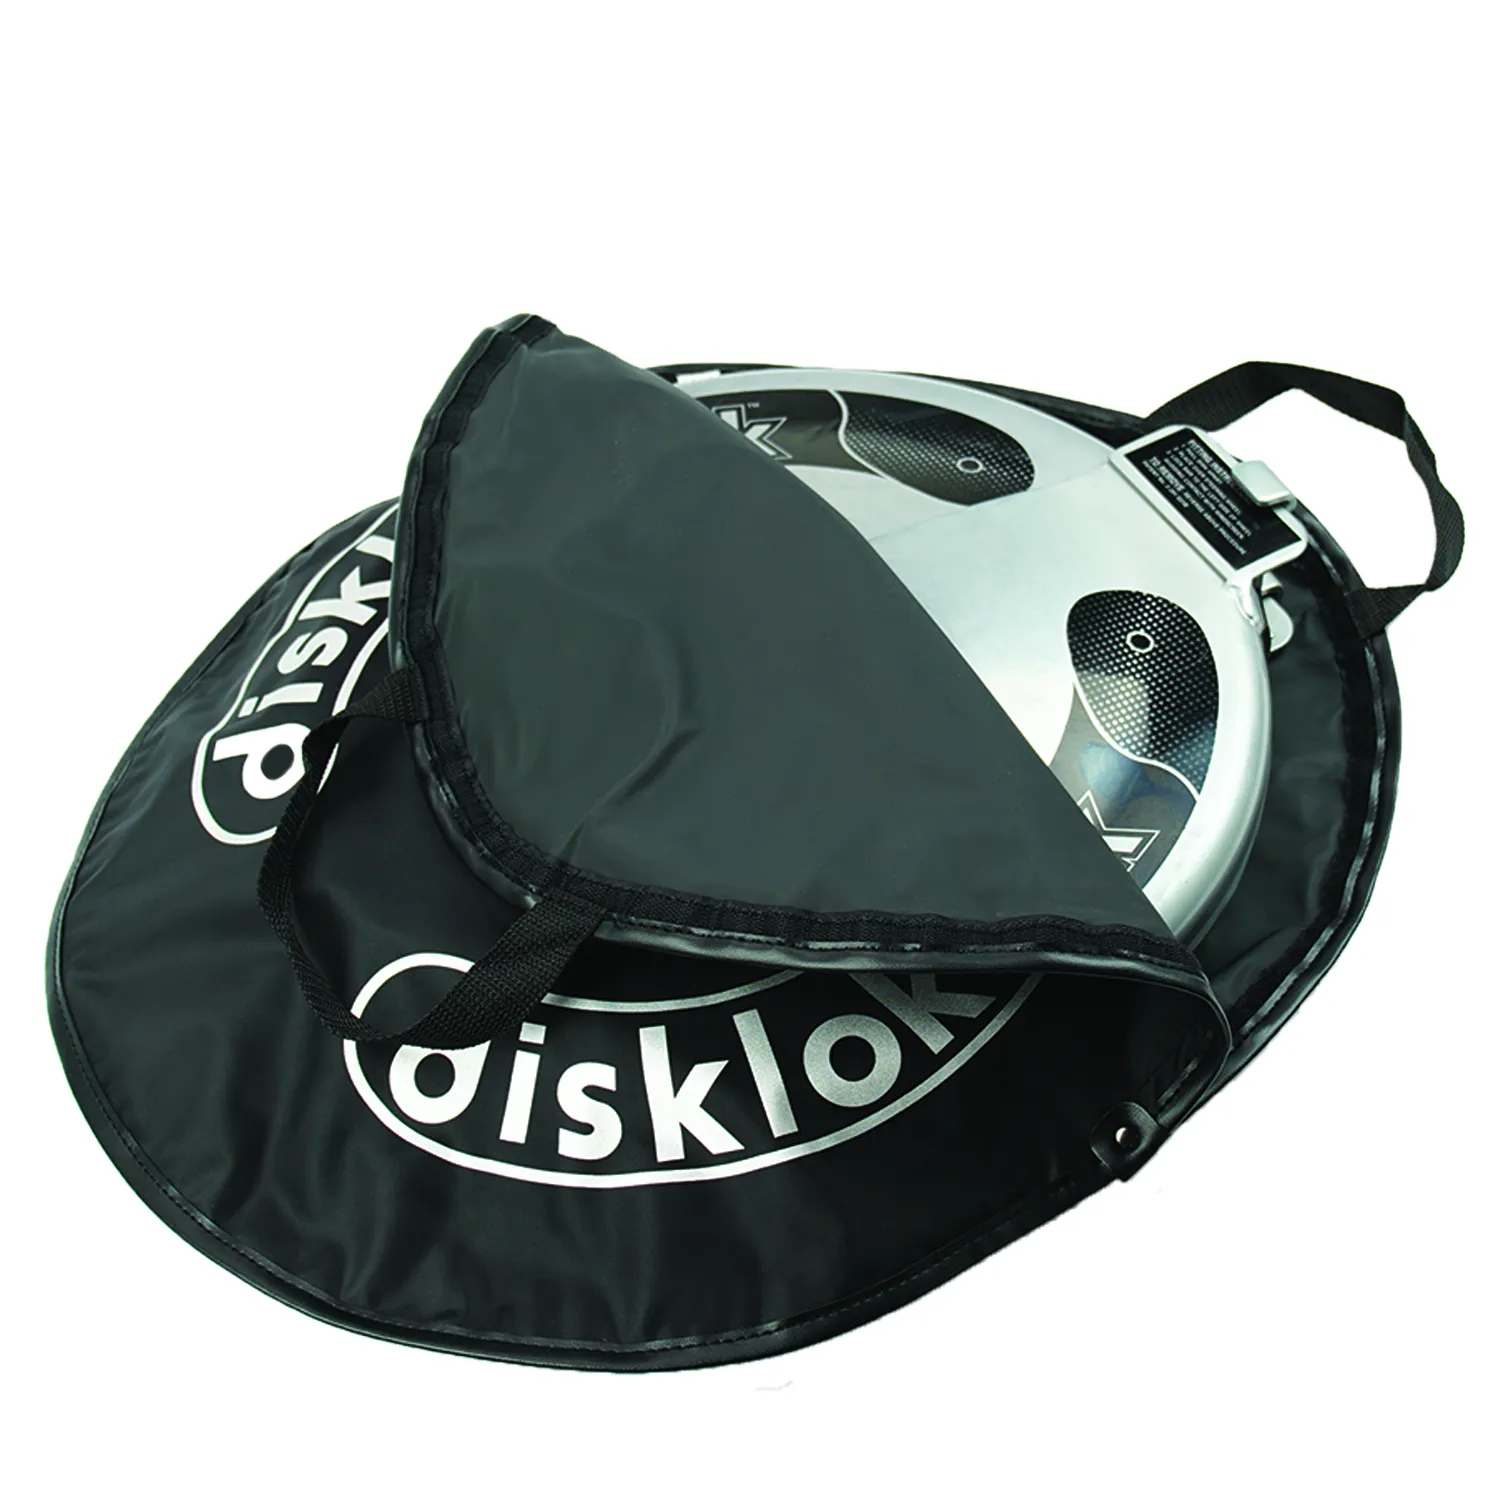 Disklok storage bag